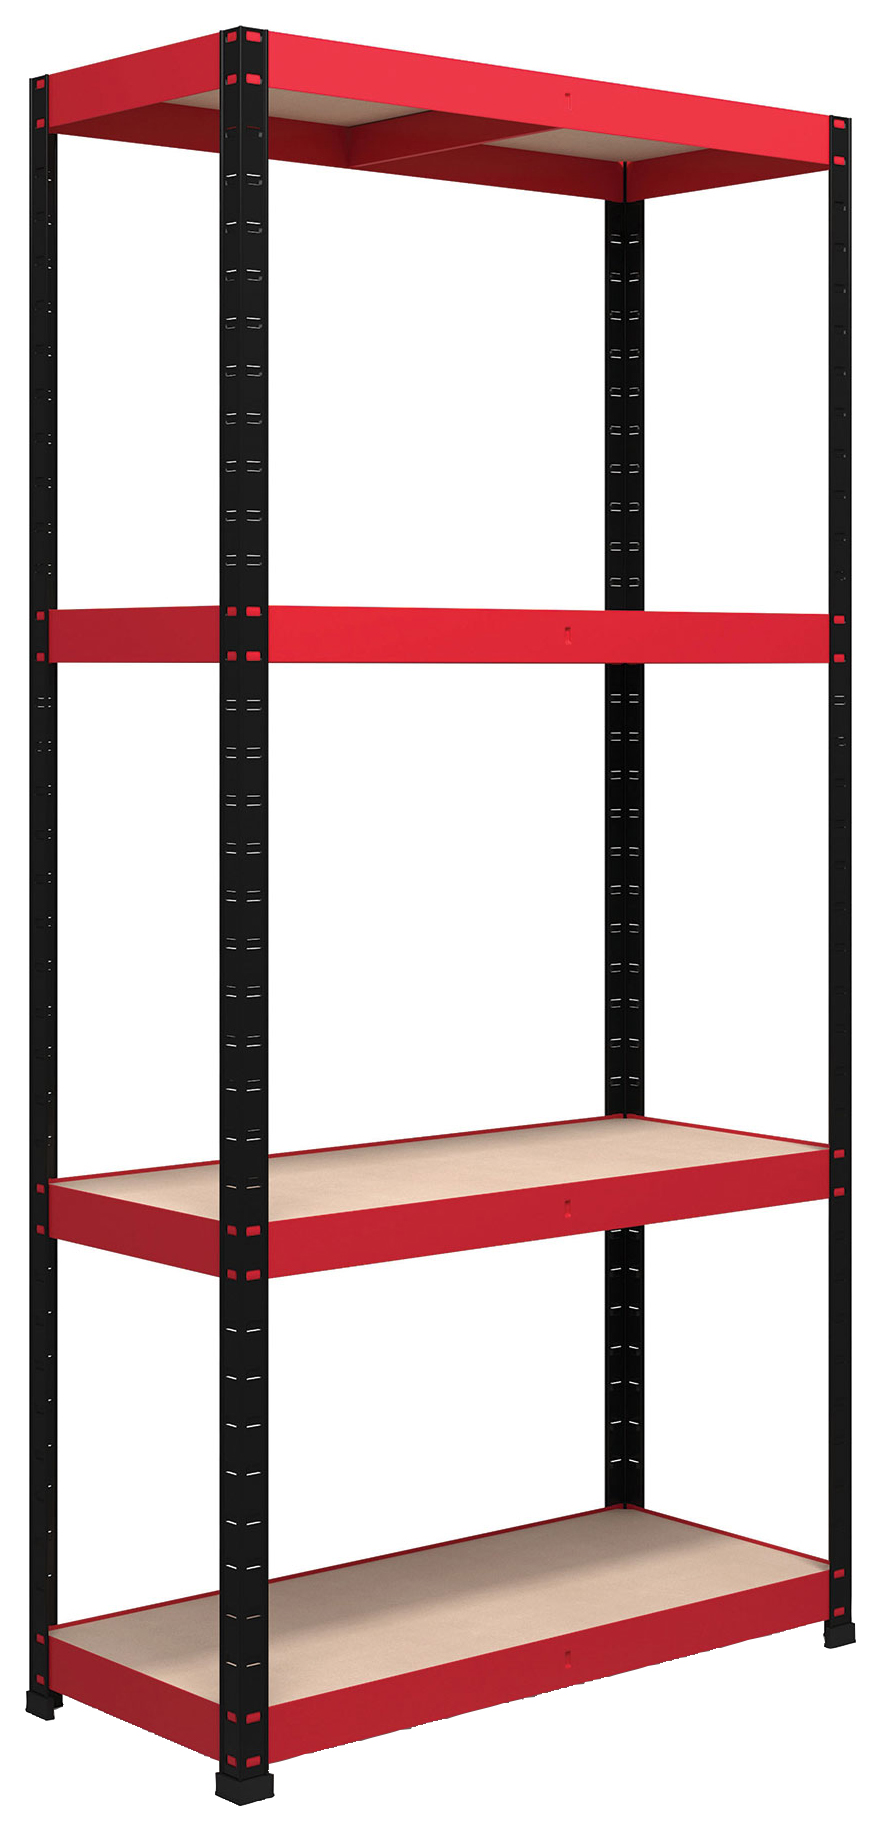 Image of Rb Boss Shelf Kit 4 Wood Shelves - 1800 x 900 x 300mm 500kg Udl